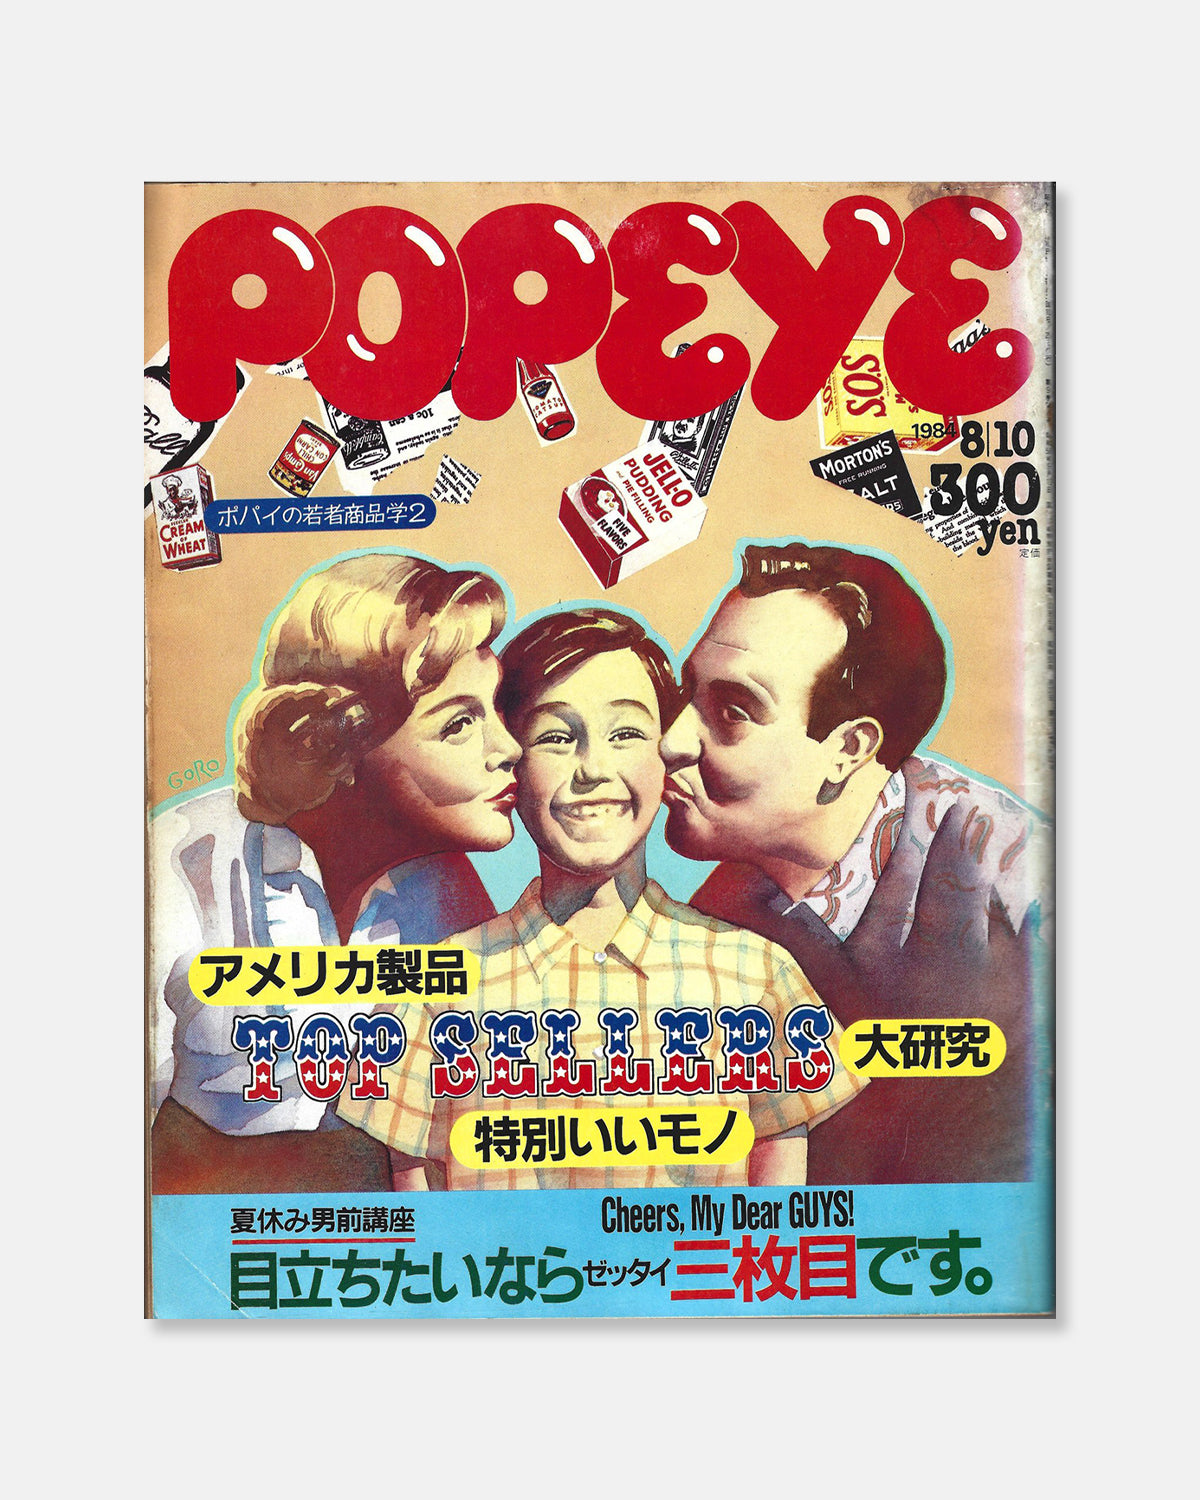 Popeye Magazine July 1984 (#180)